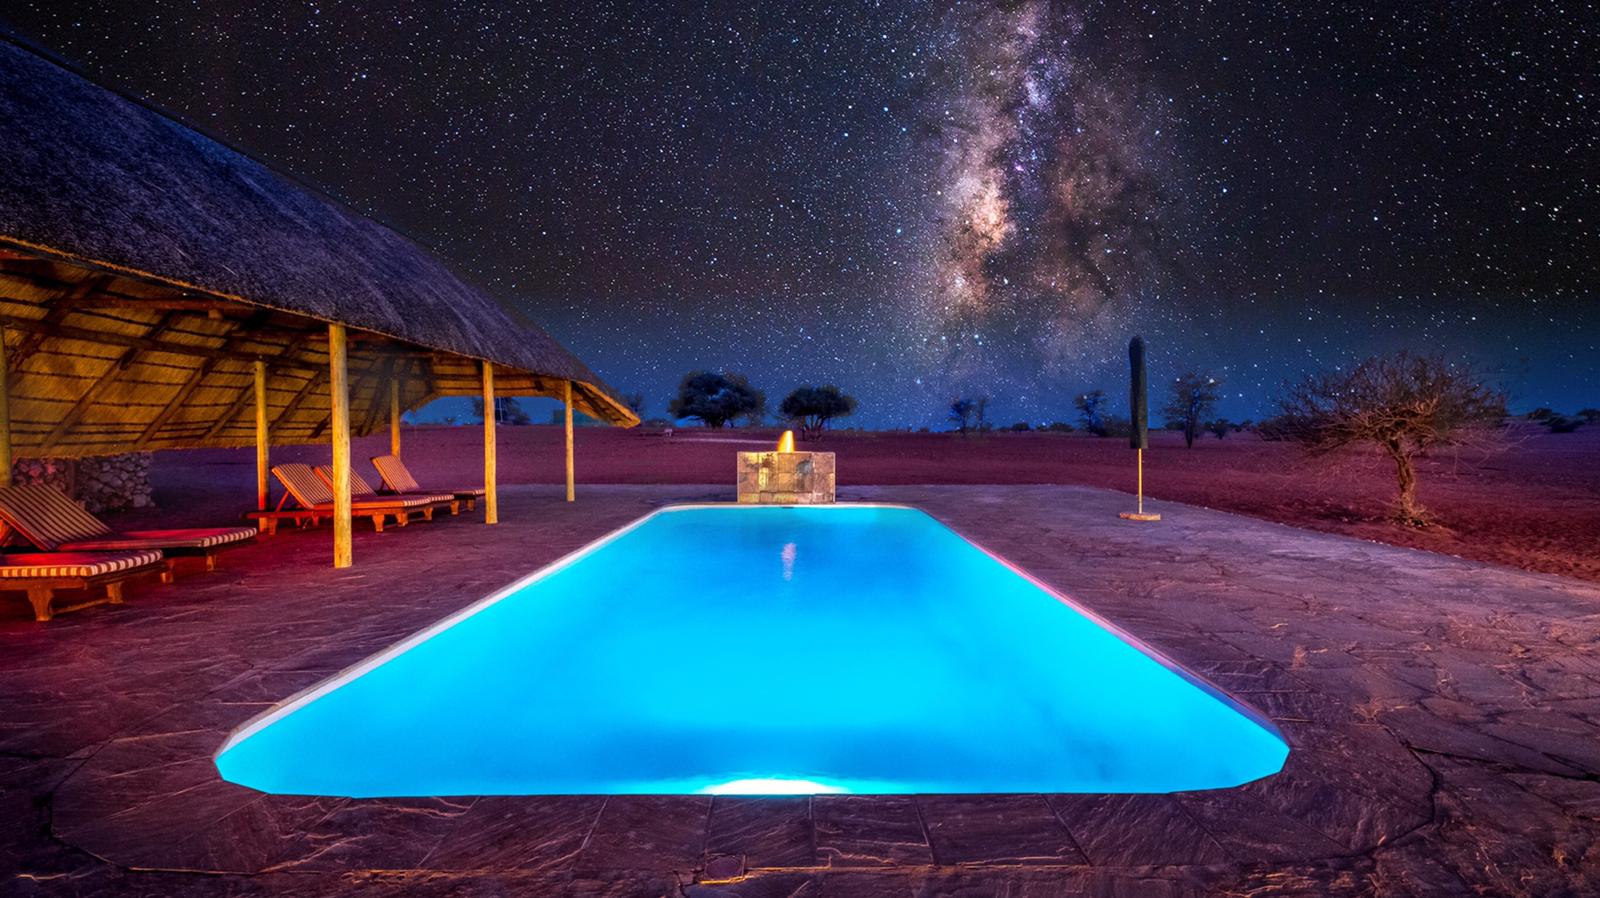 Bagatelle Lodge - Kalahari Game Ranch - Namibia - Pool at night